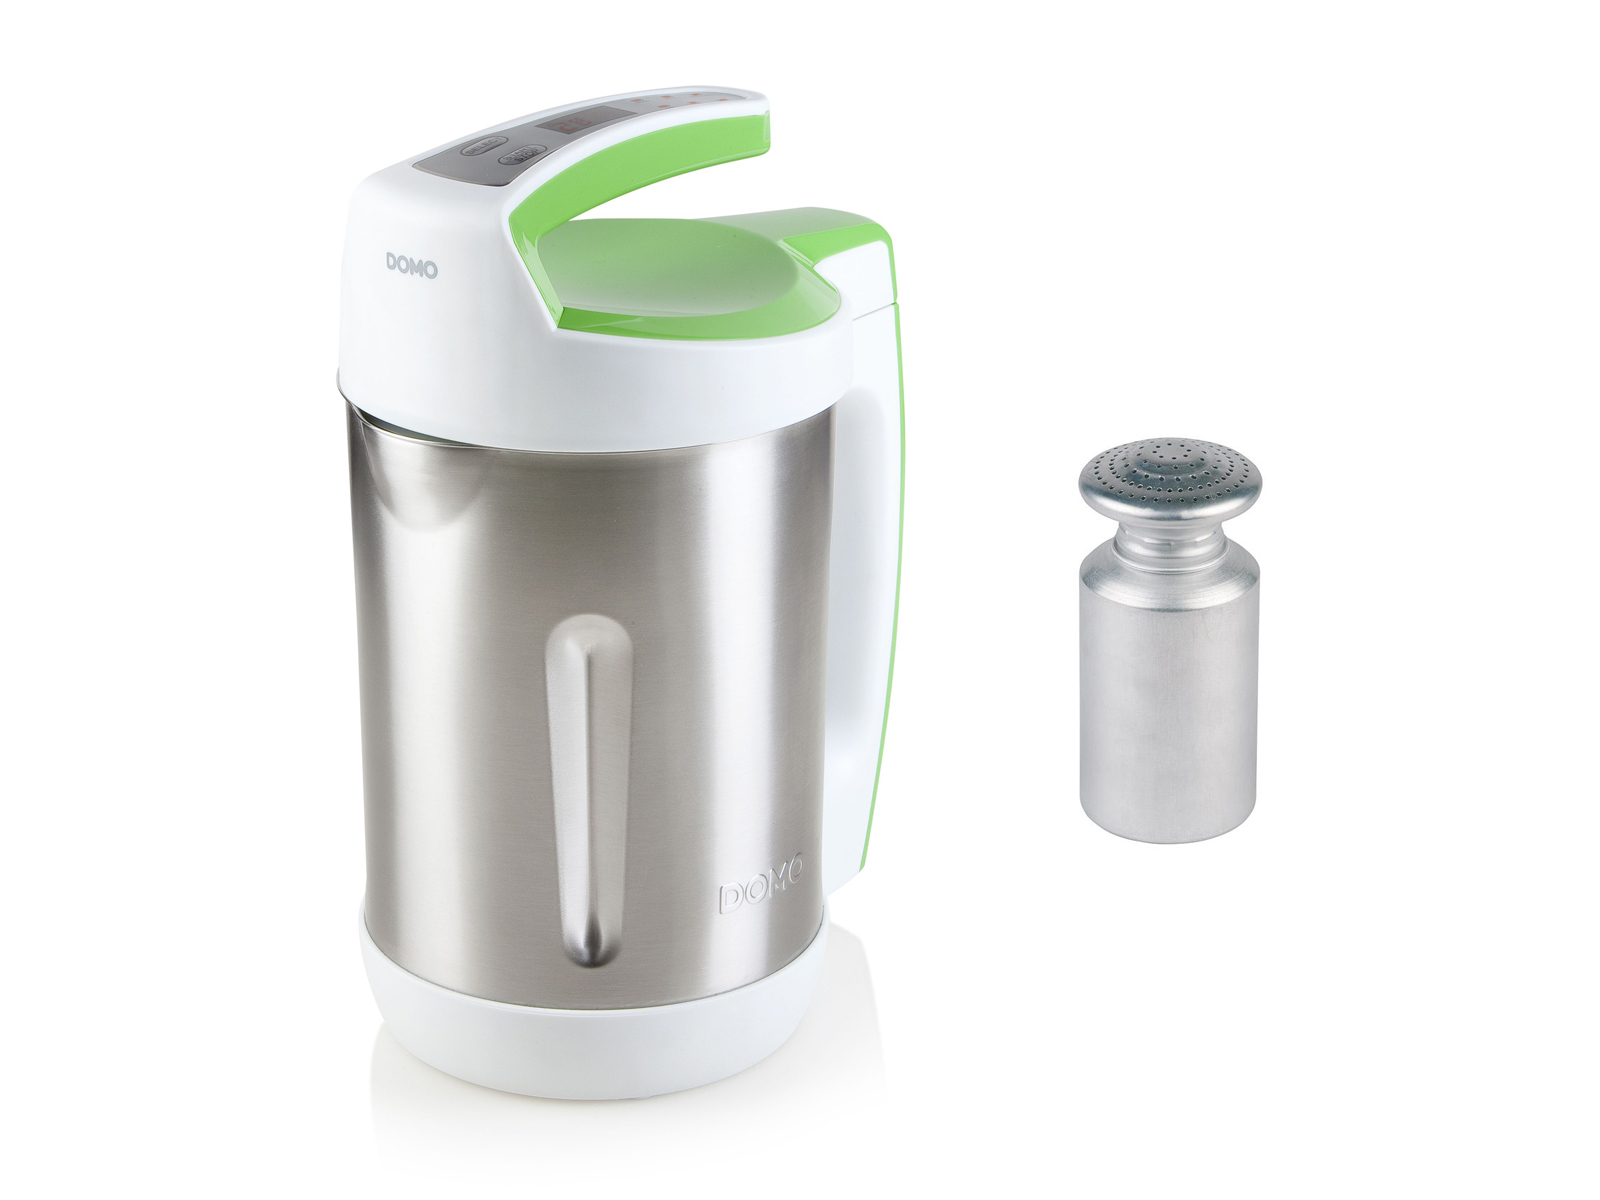 Silber-Weiß-Grün (1000 2 Küchenmaschine Watt, Suppenkocher Liter) SETPOINT